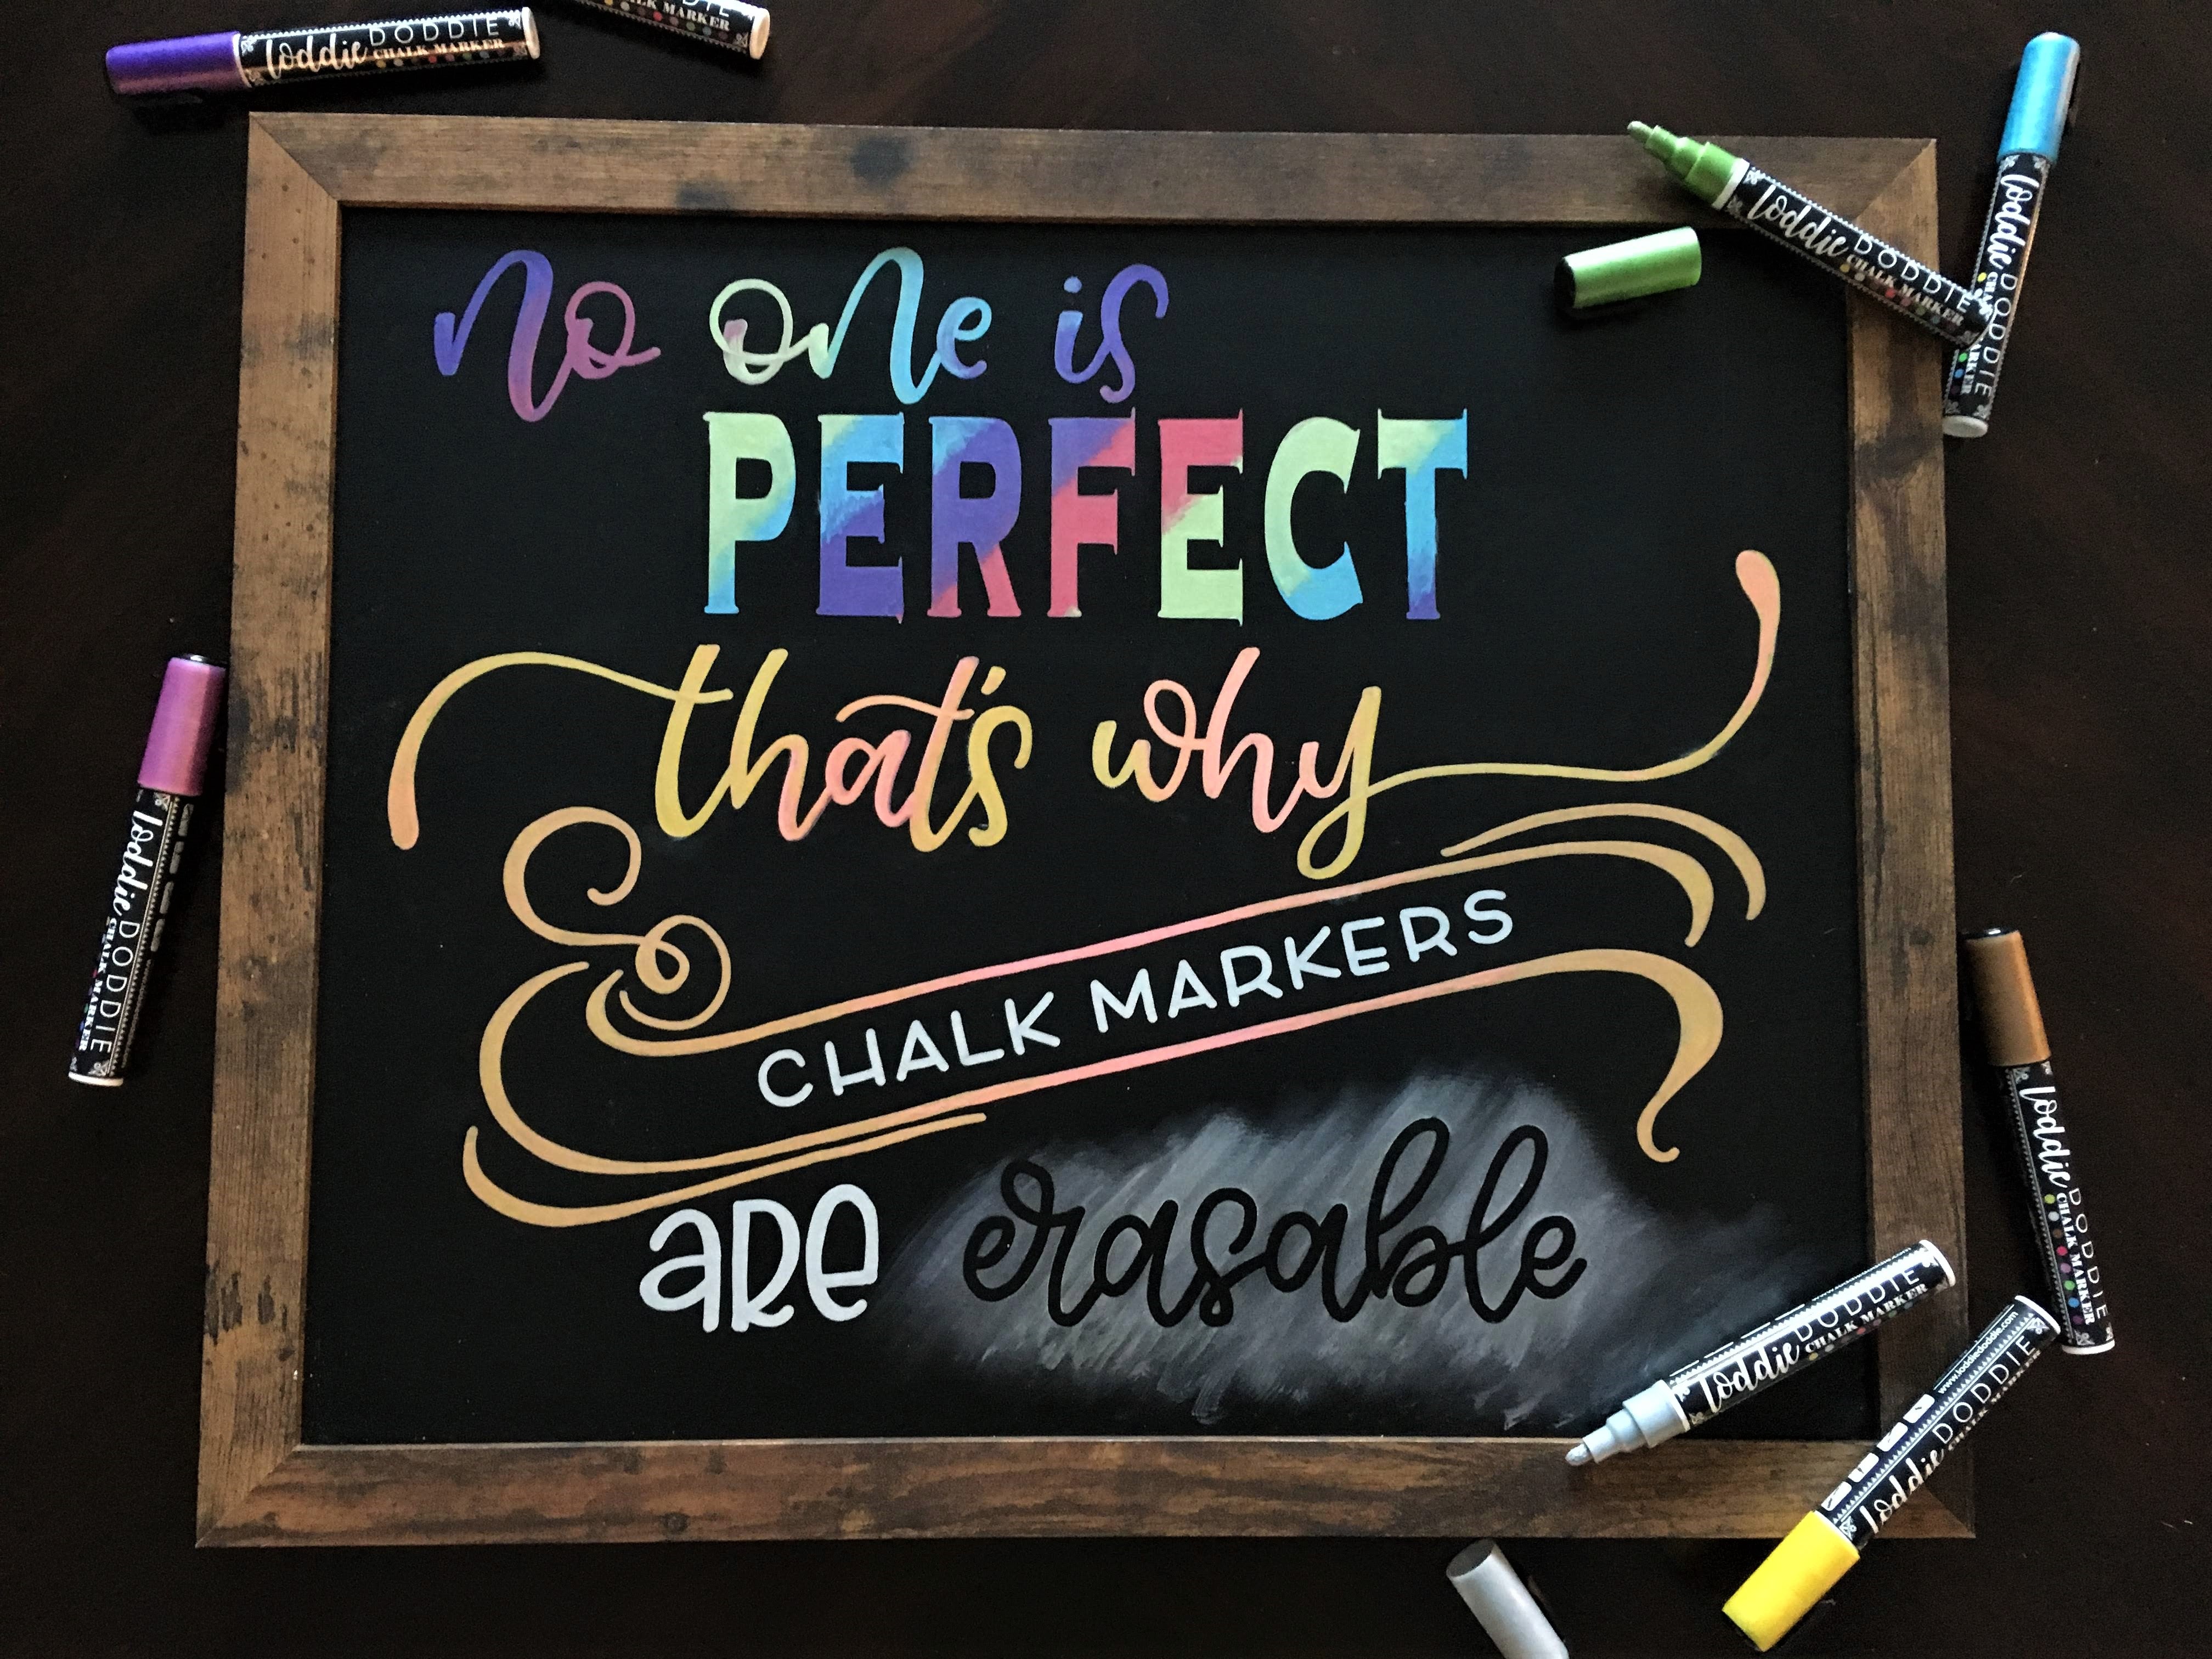 16ct Chalk Markers- Artists Assortment – LoddieDoddie